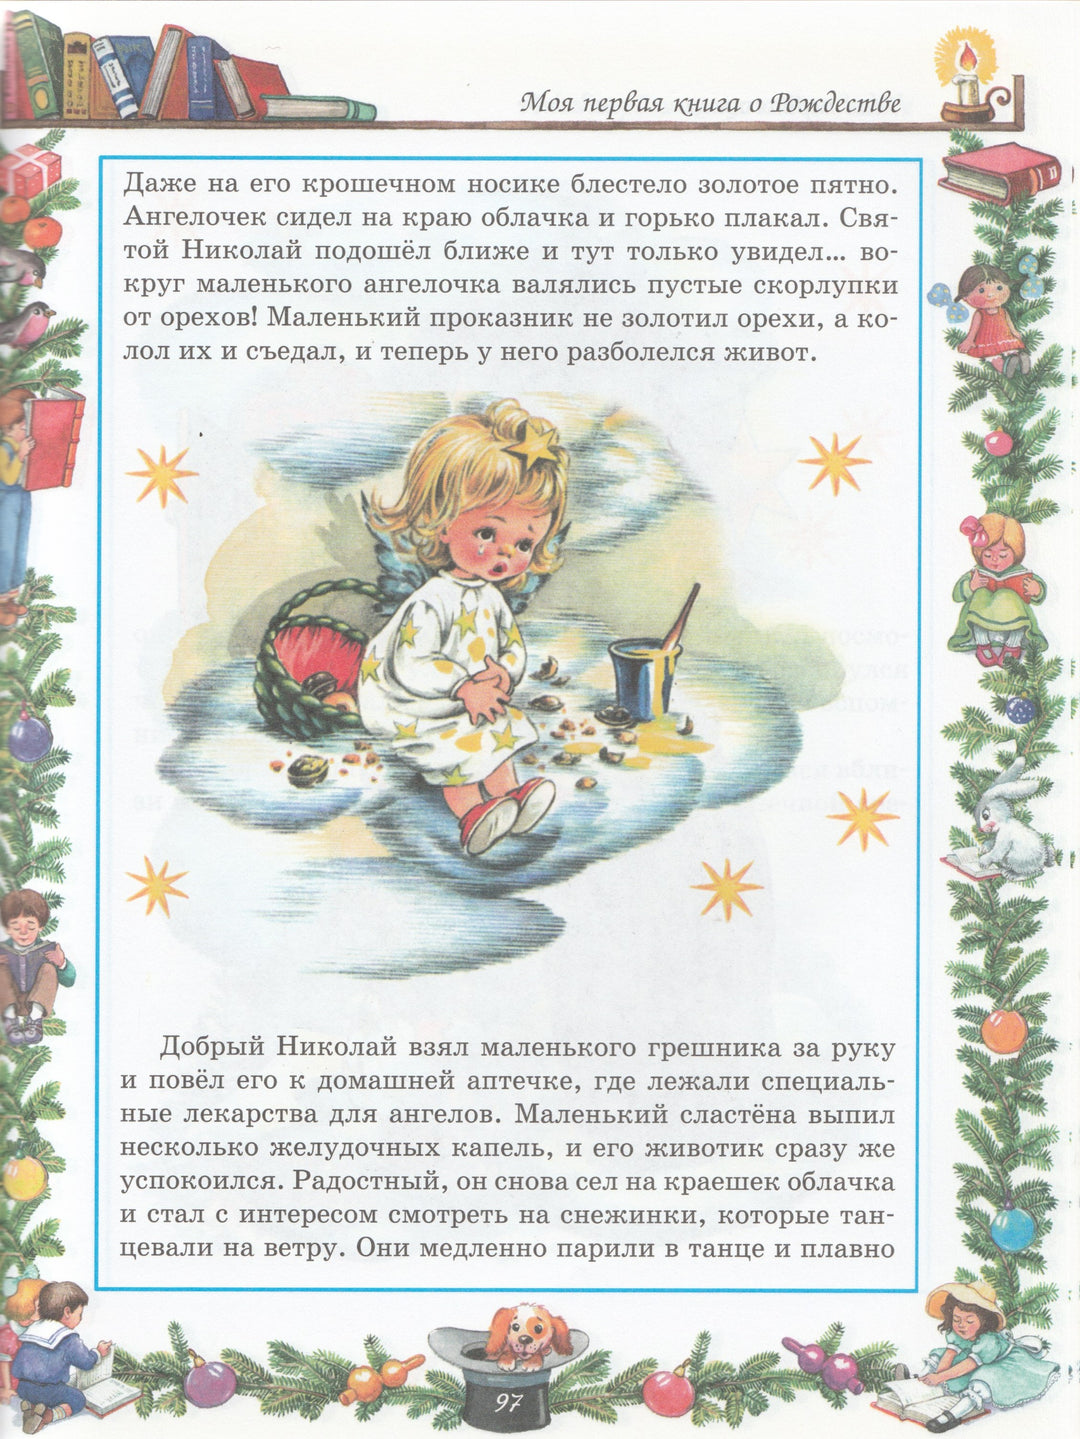 Новый Год и Рождество-Шалаева Г.-АСТ-Lookomorie